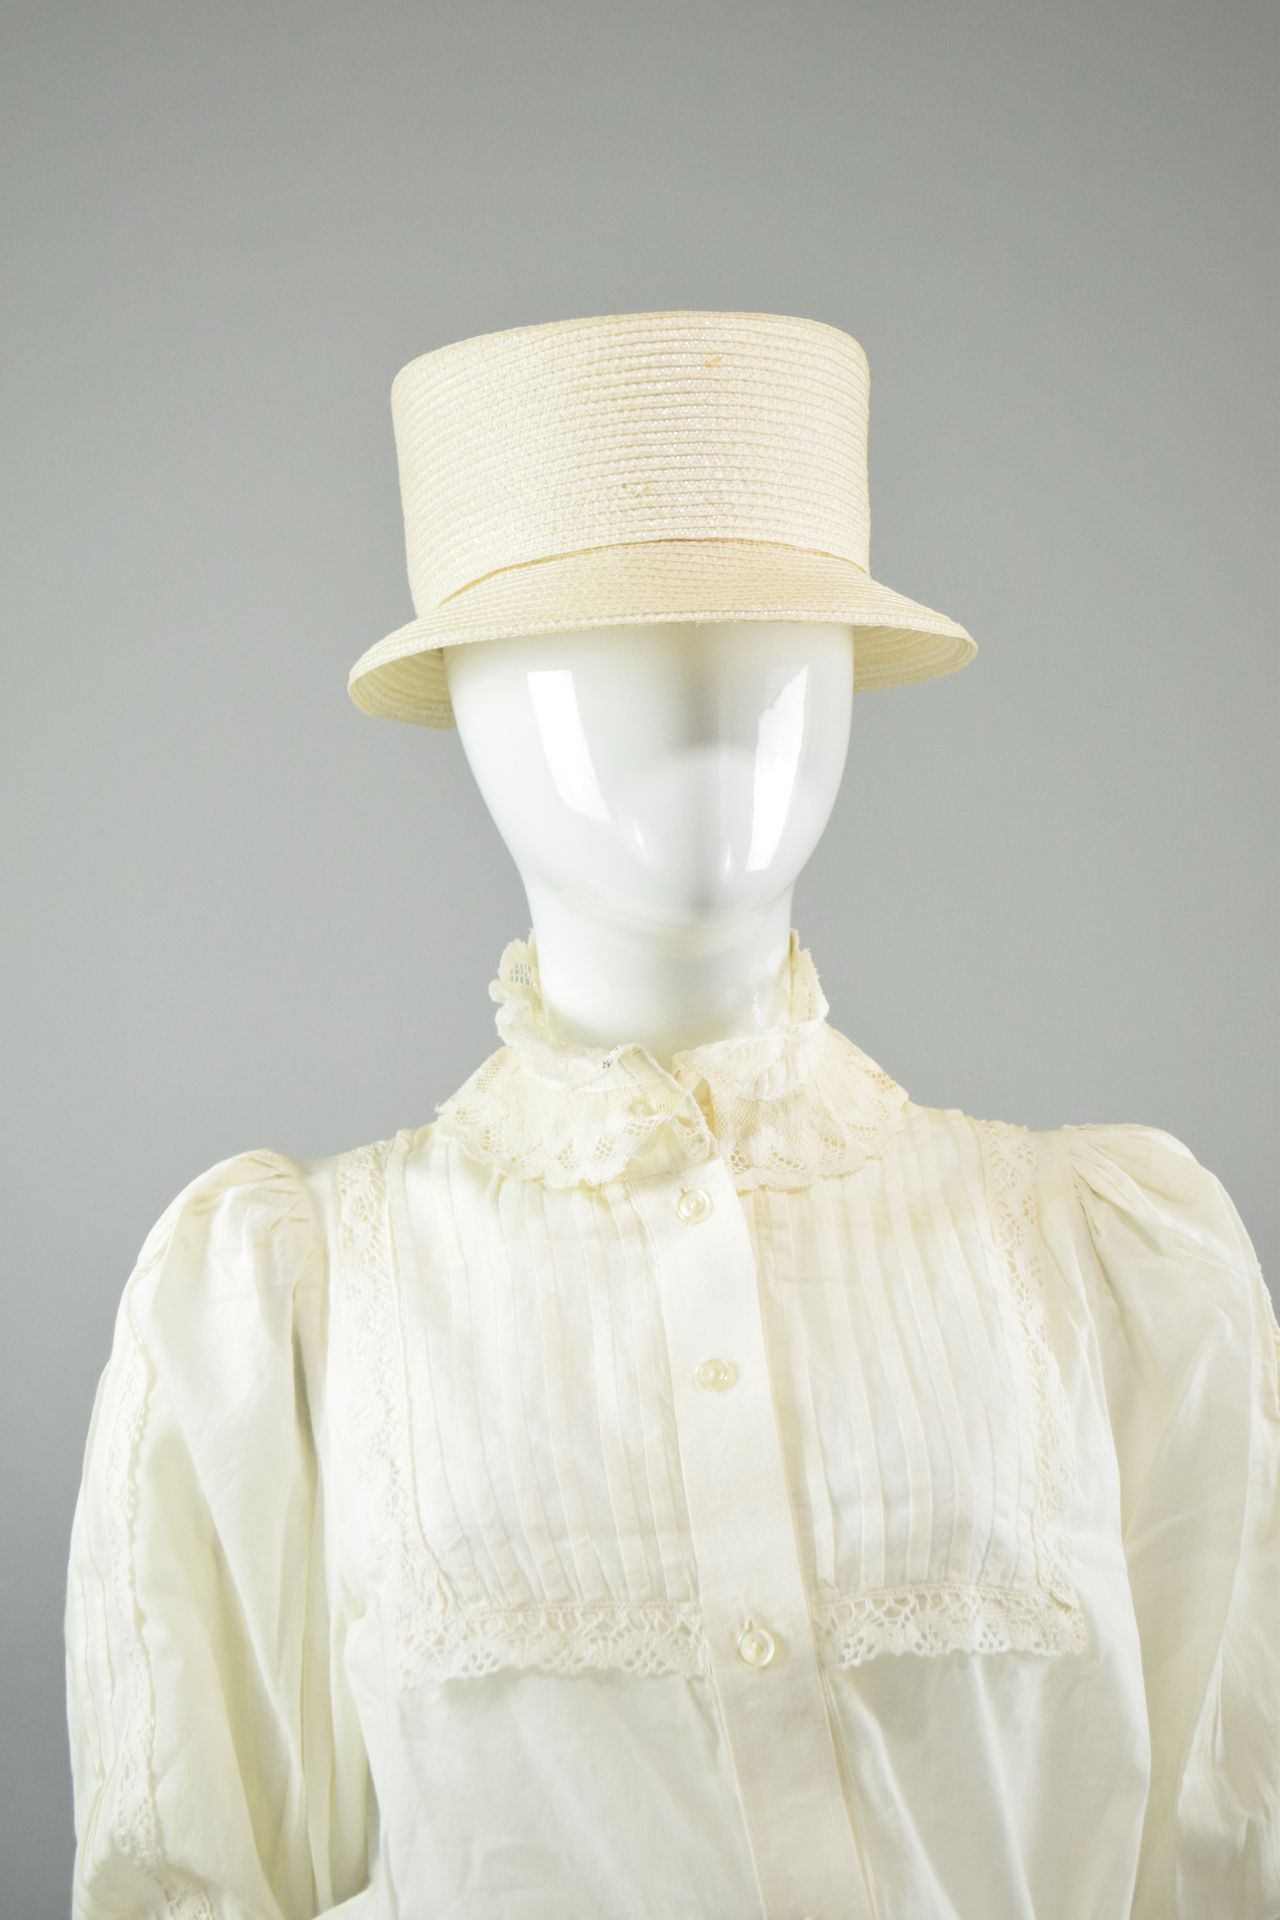 Null 克里斯蒂安-迪奥专卖店 
约1980年末

小编织帽，短檐，正面有轻微的遮阳板。 

直径：19.5厘米